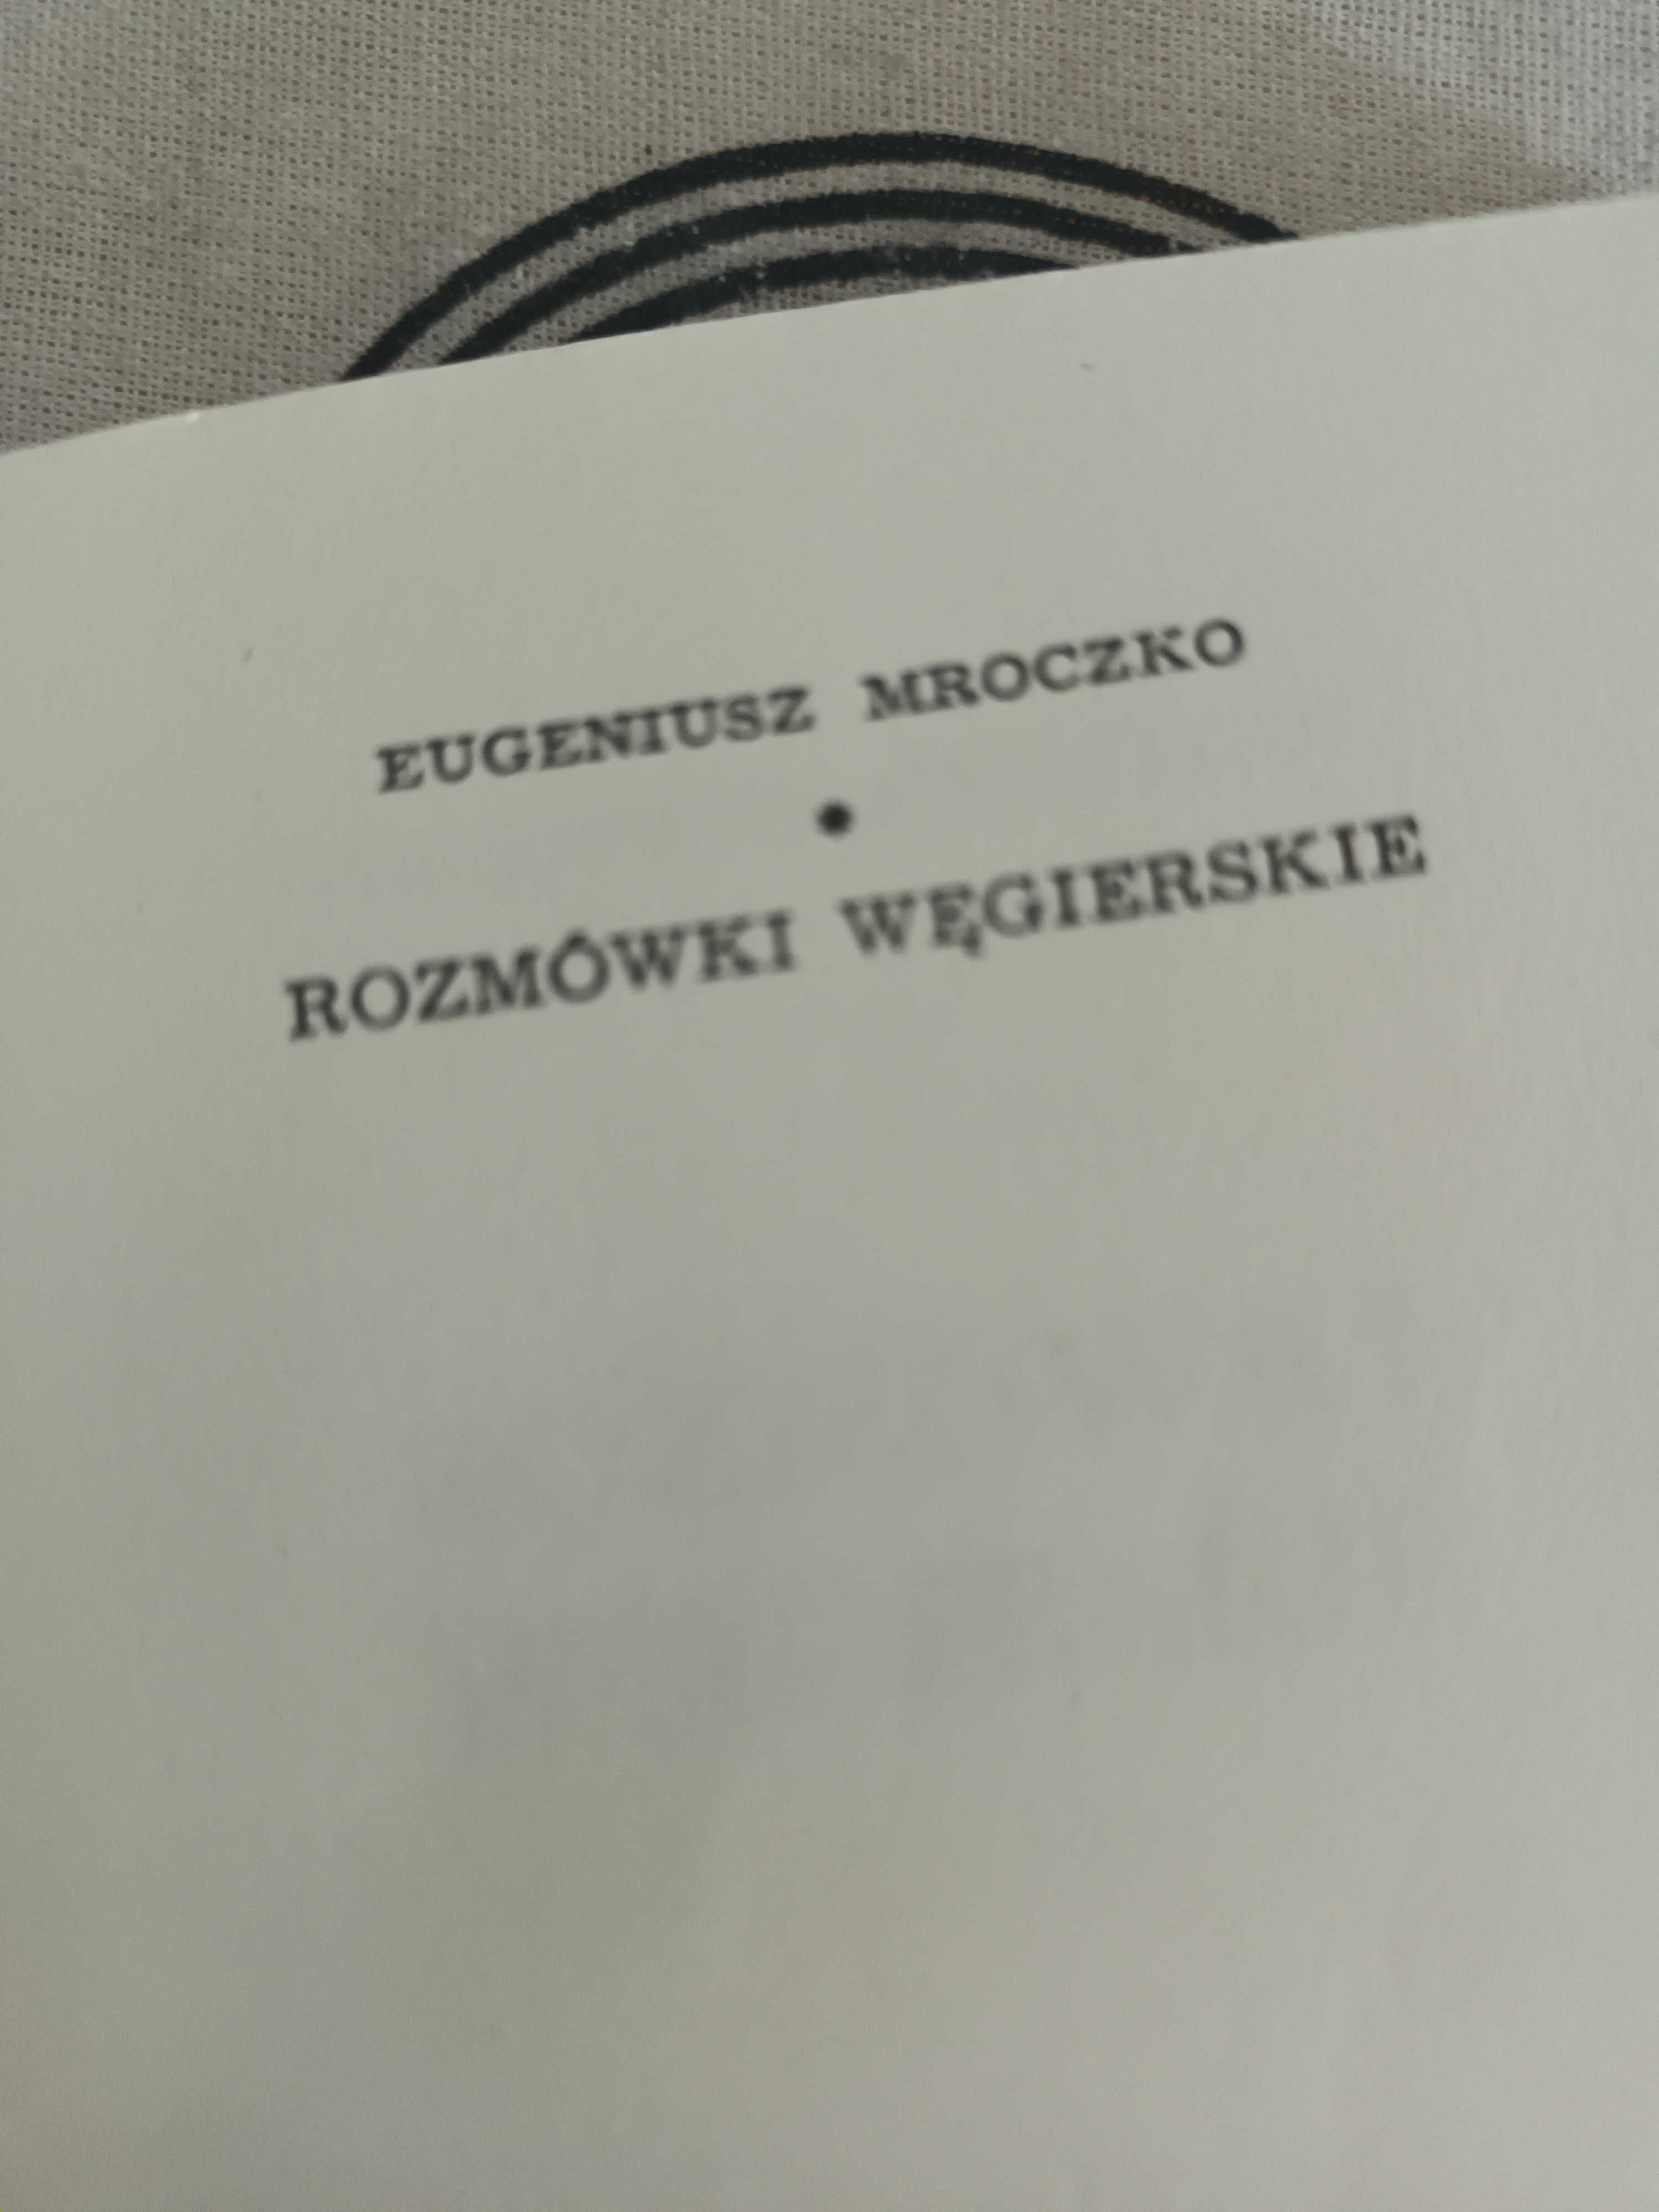 E.Mroczko, Rozmówki węgierskie 1958